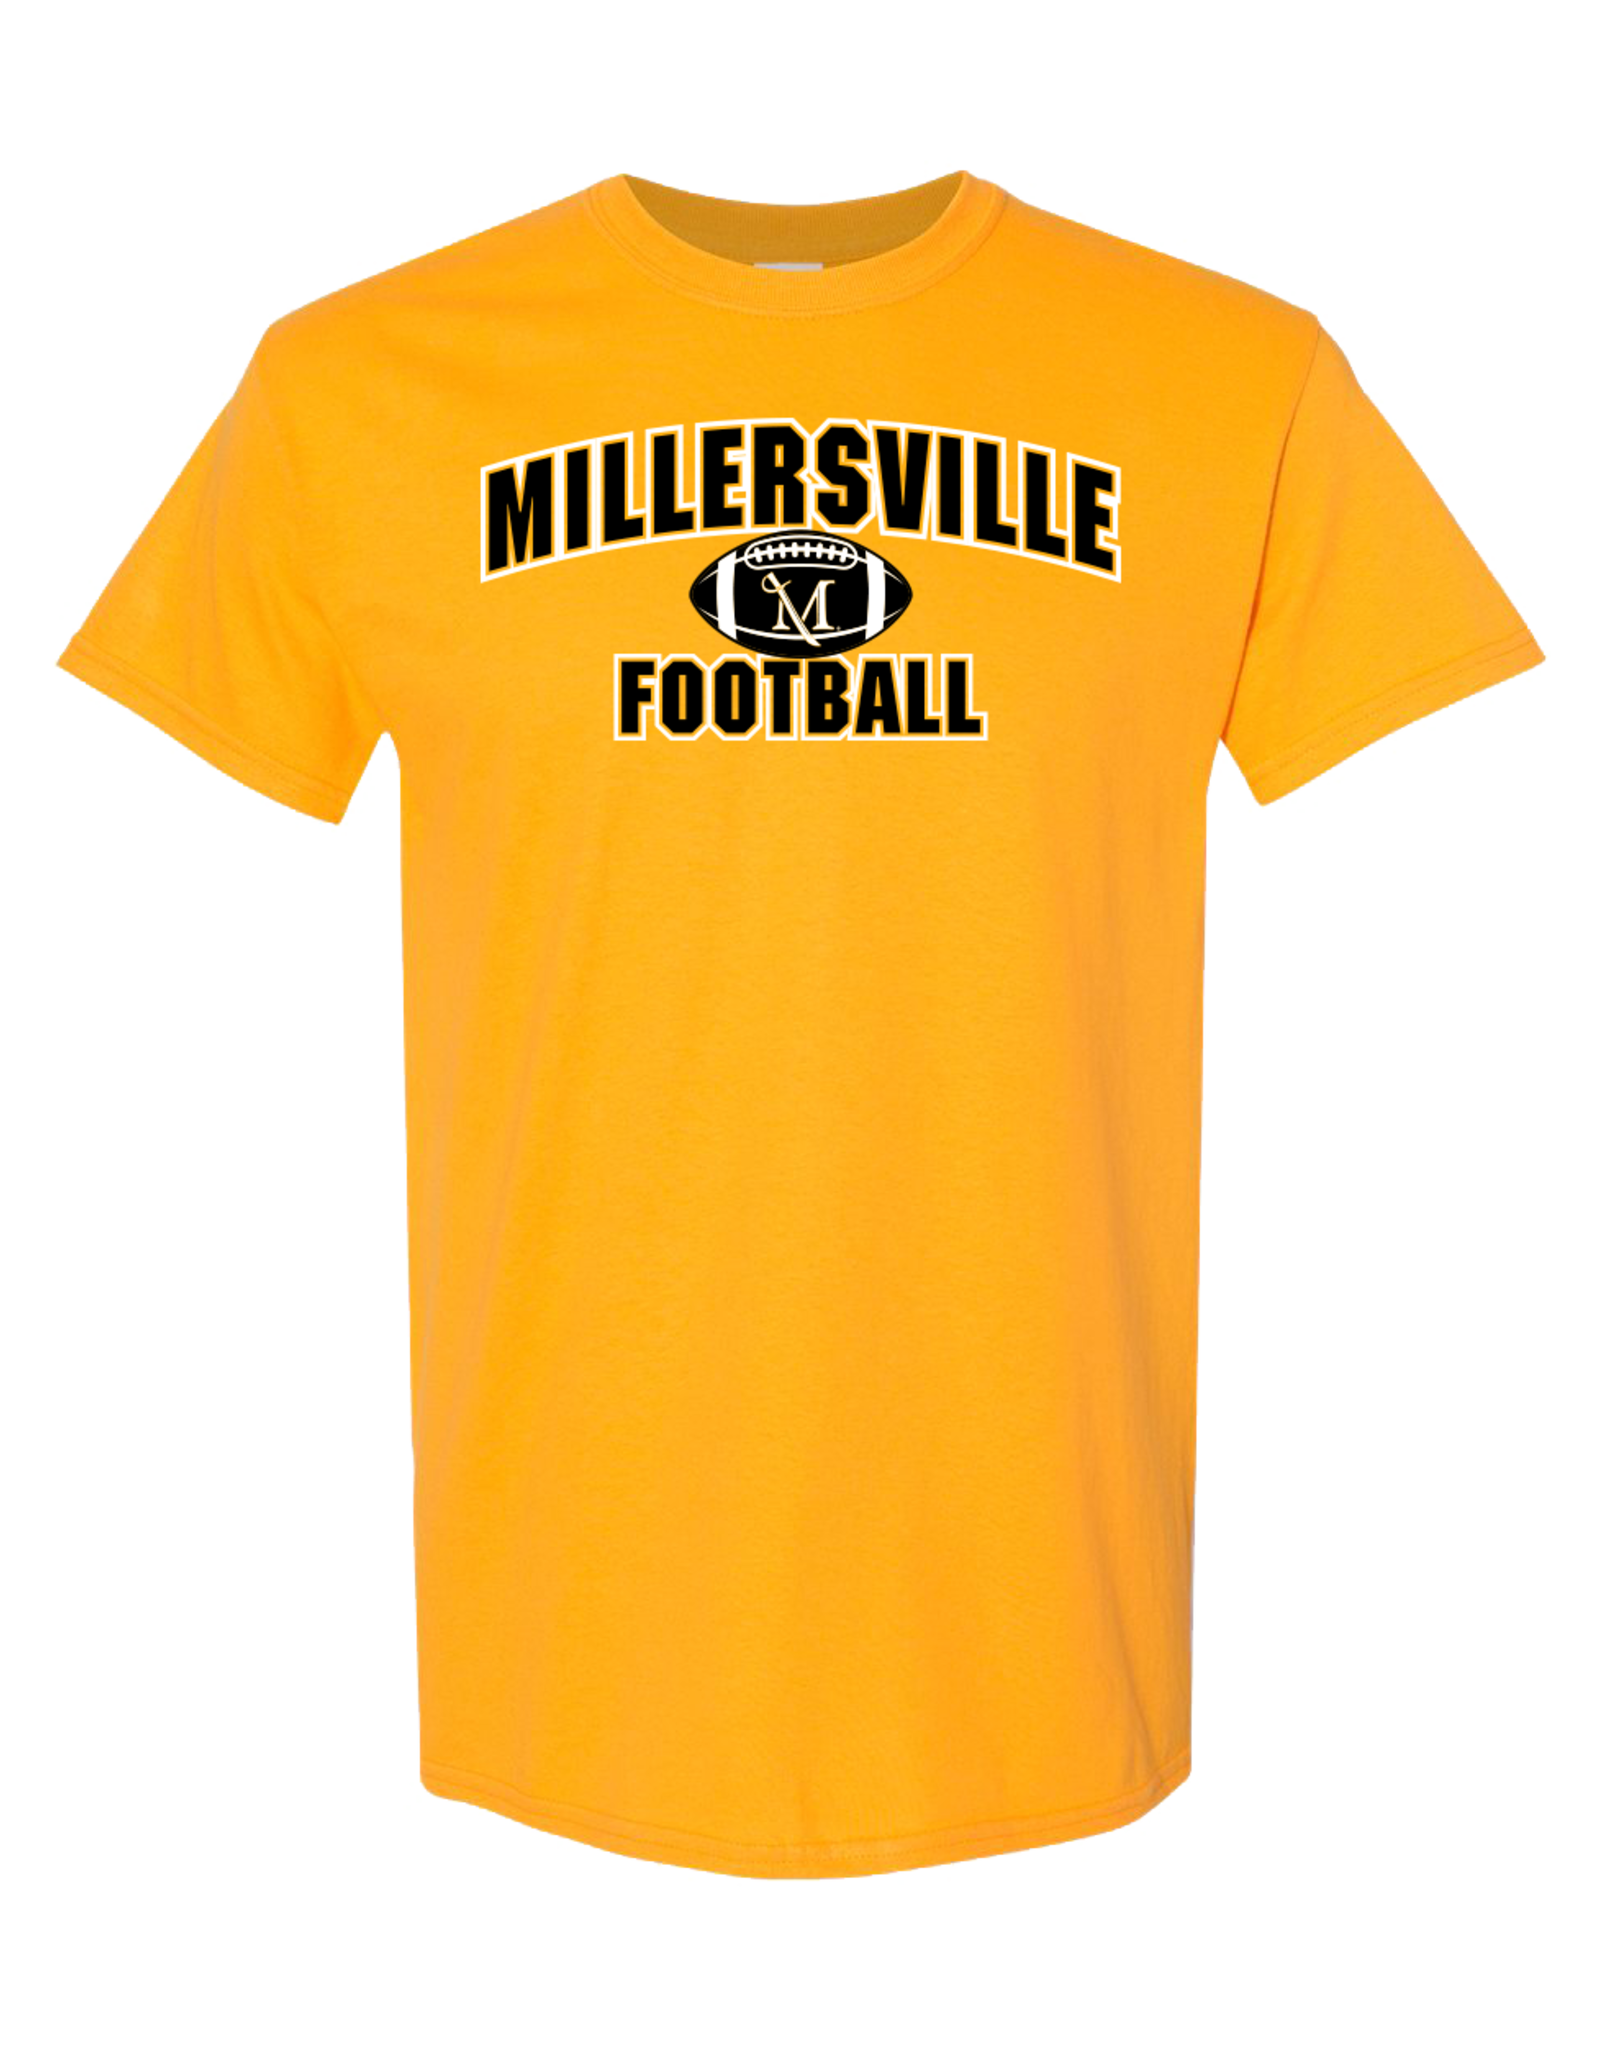 Millersville Football Tee Gold